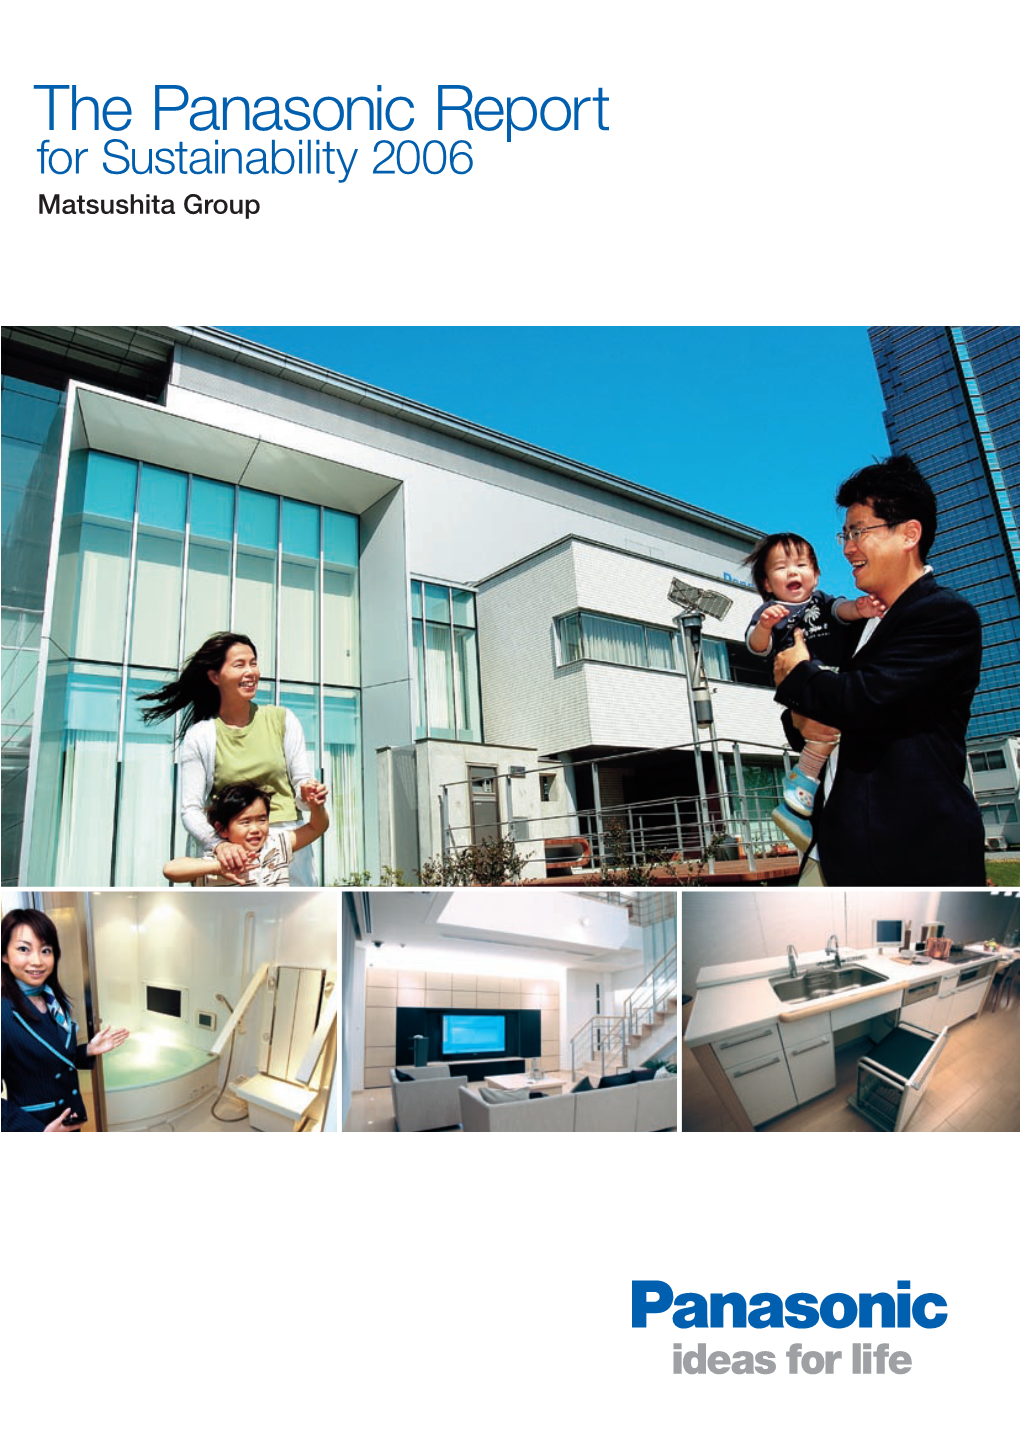 The Panasonic Report for Sustainability 2006 Matsushita Group